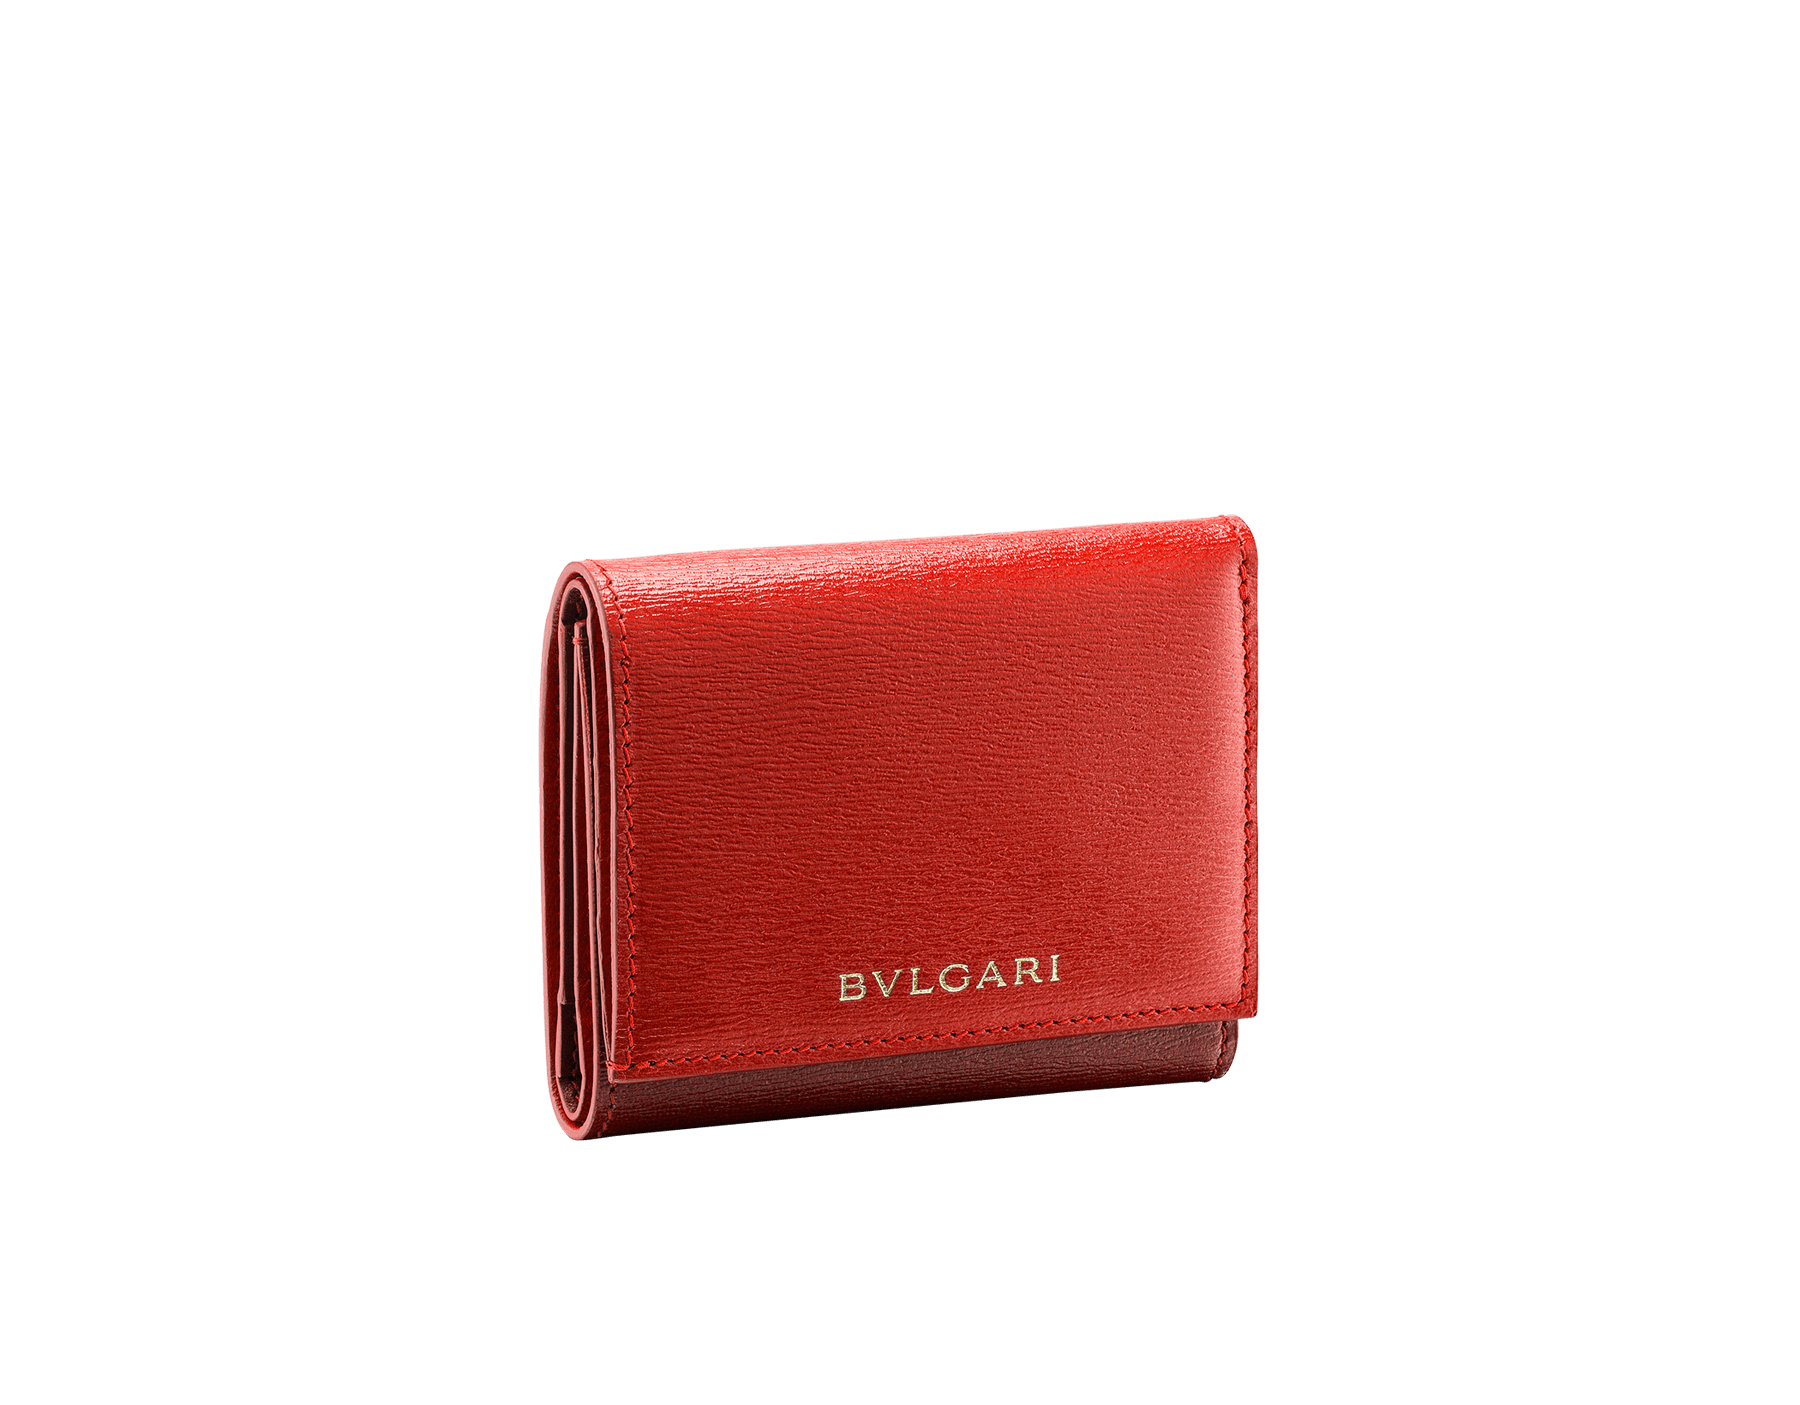 30代、40代、50代の女性におすすめの、憧れのハイブランドが仕立てる可愛いレディースミニ財布はBVLGARIのビー・ゼロワン 三つ折り財布